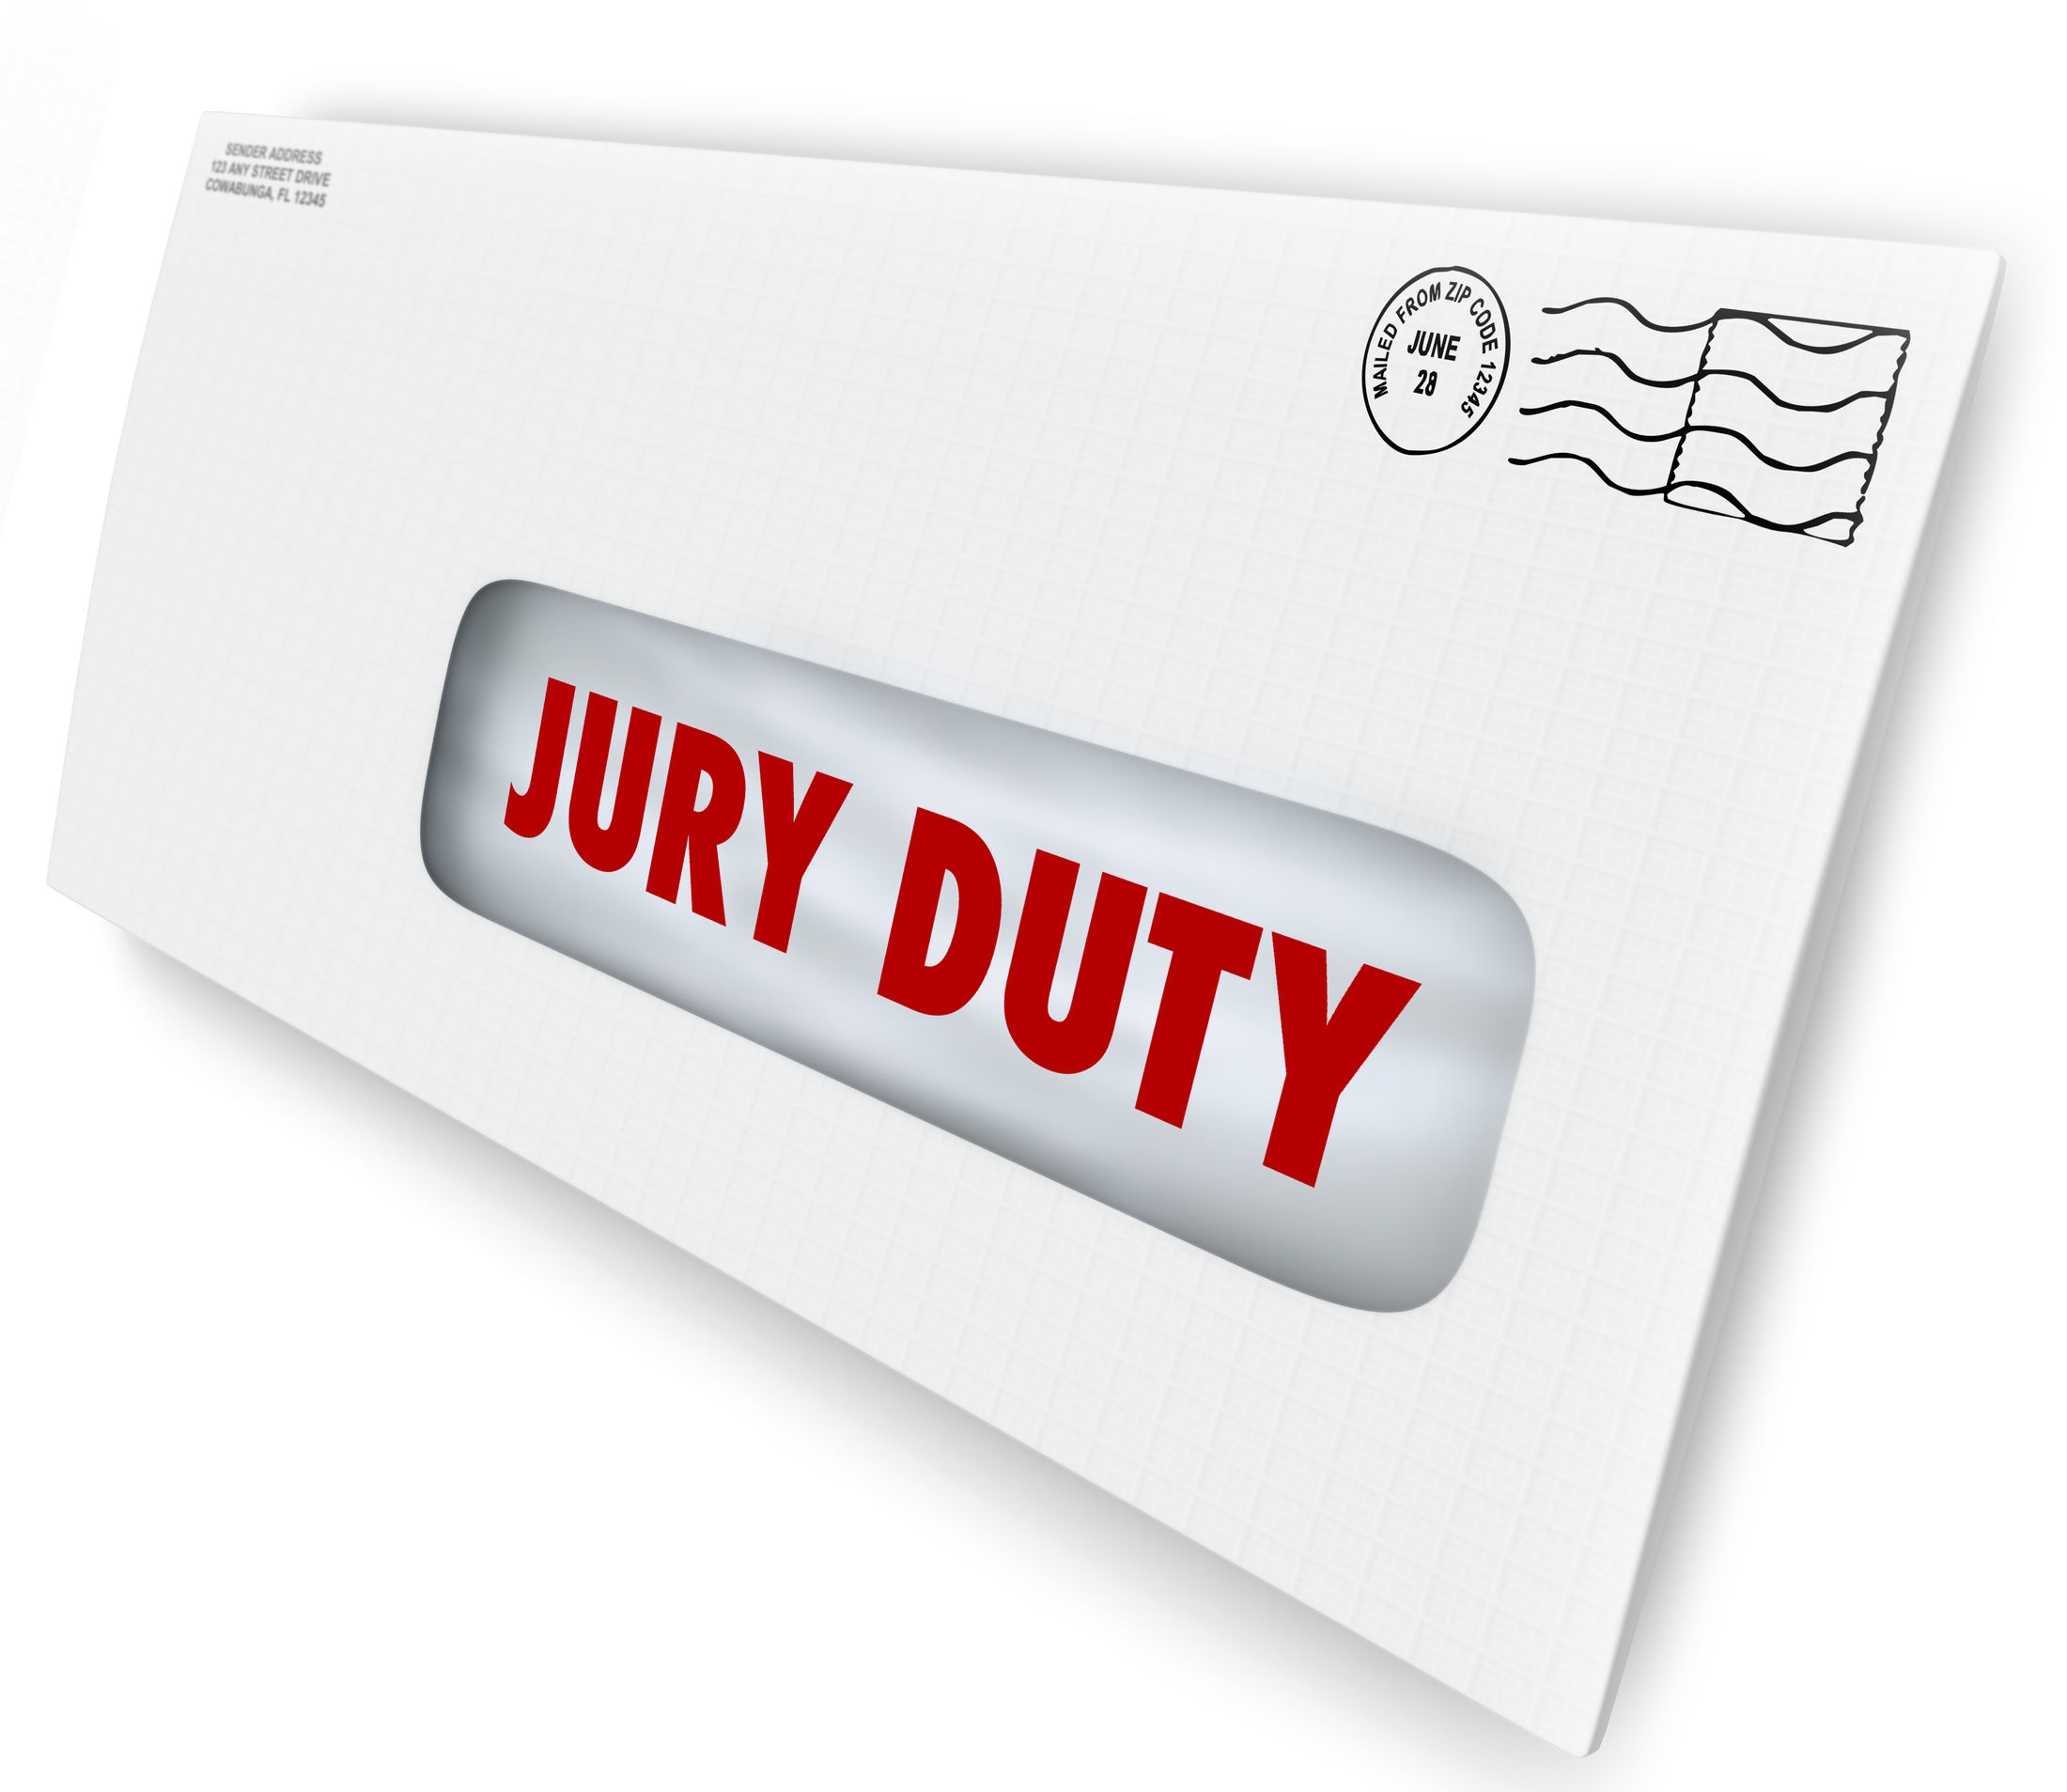 Jury duty letter